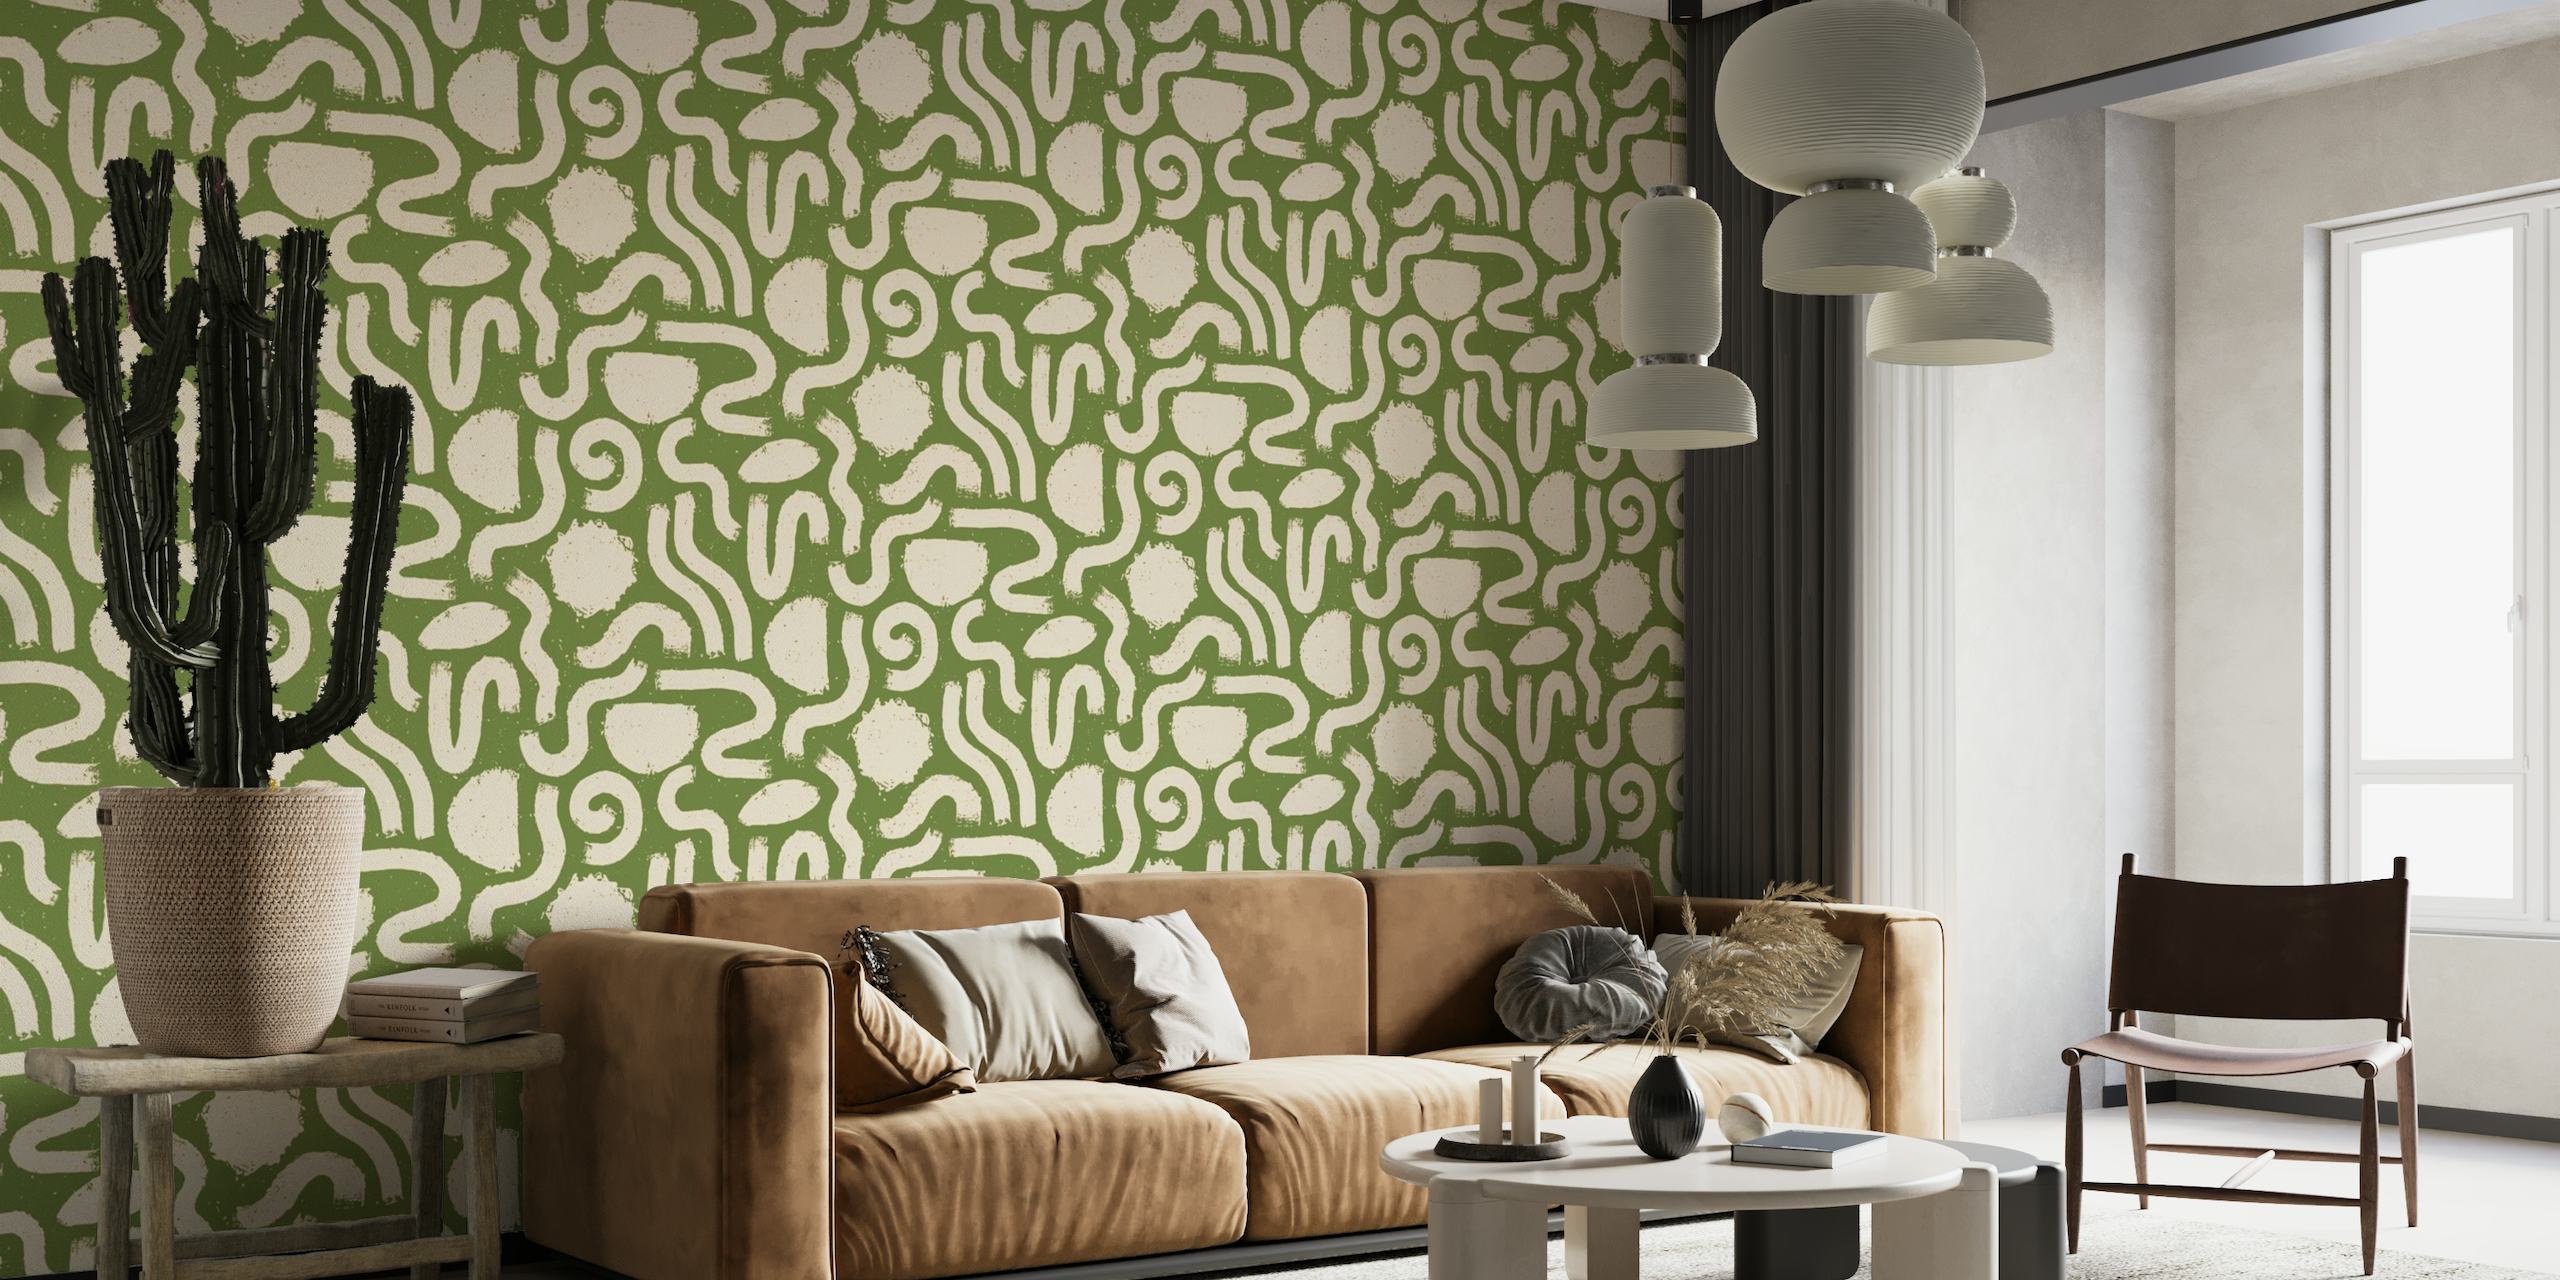 Papier peint mural sticker de formes abstraites peintes en vert et crème